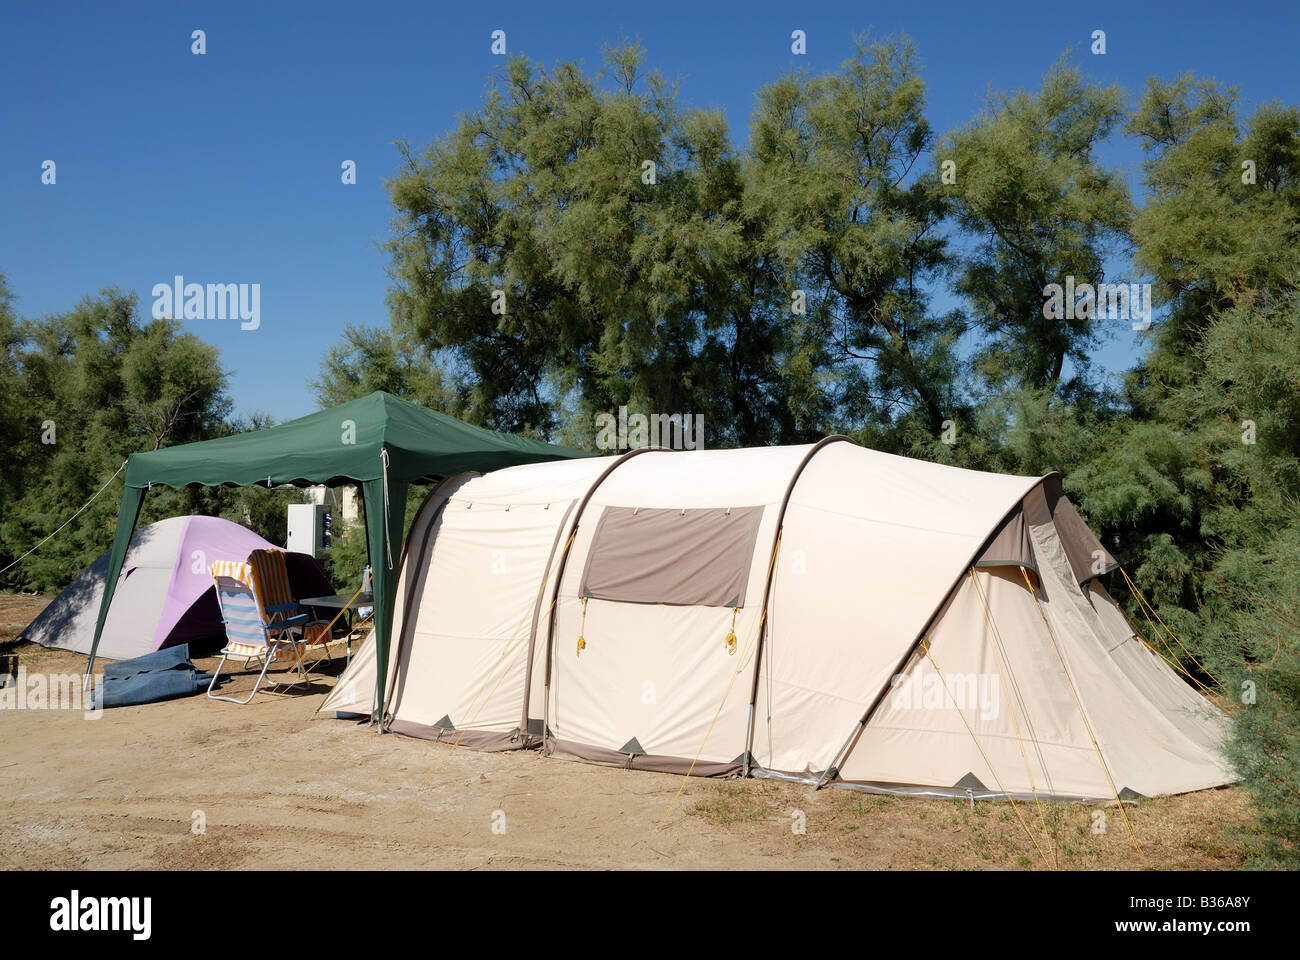 Camping in france immagini e fotografie stock ad alta risoluzione - Alamy